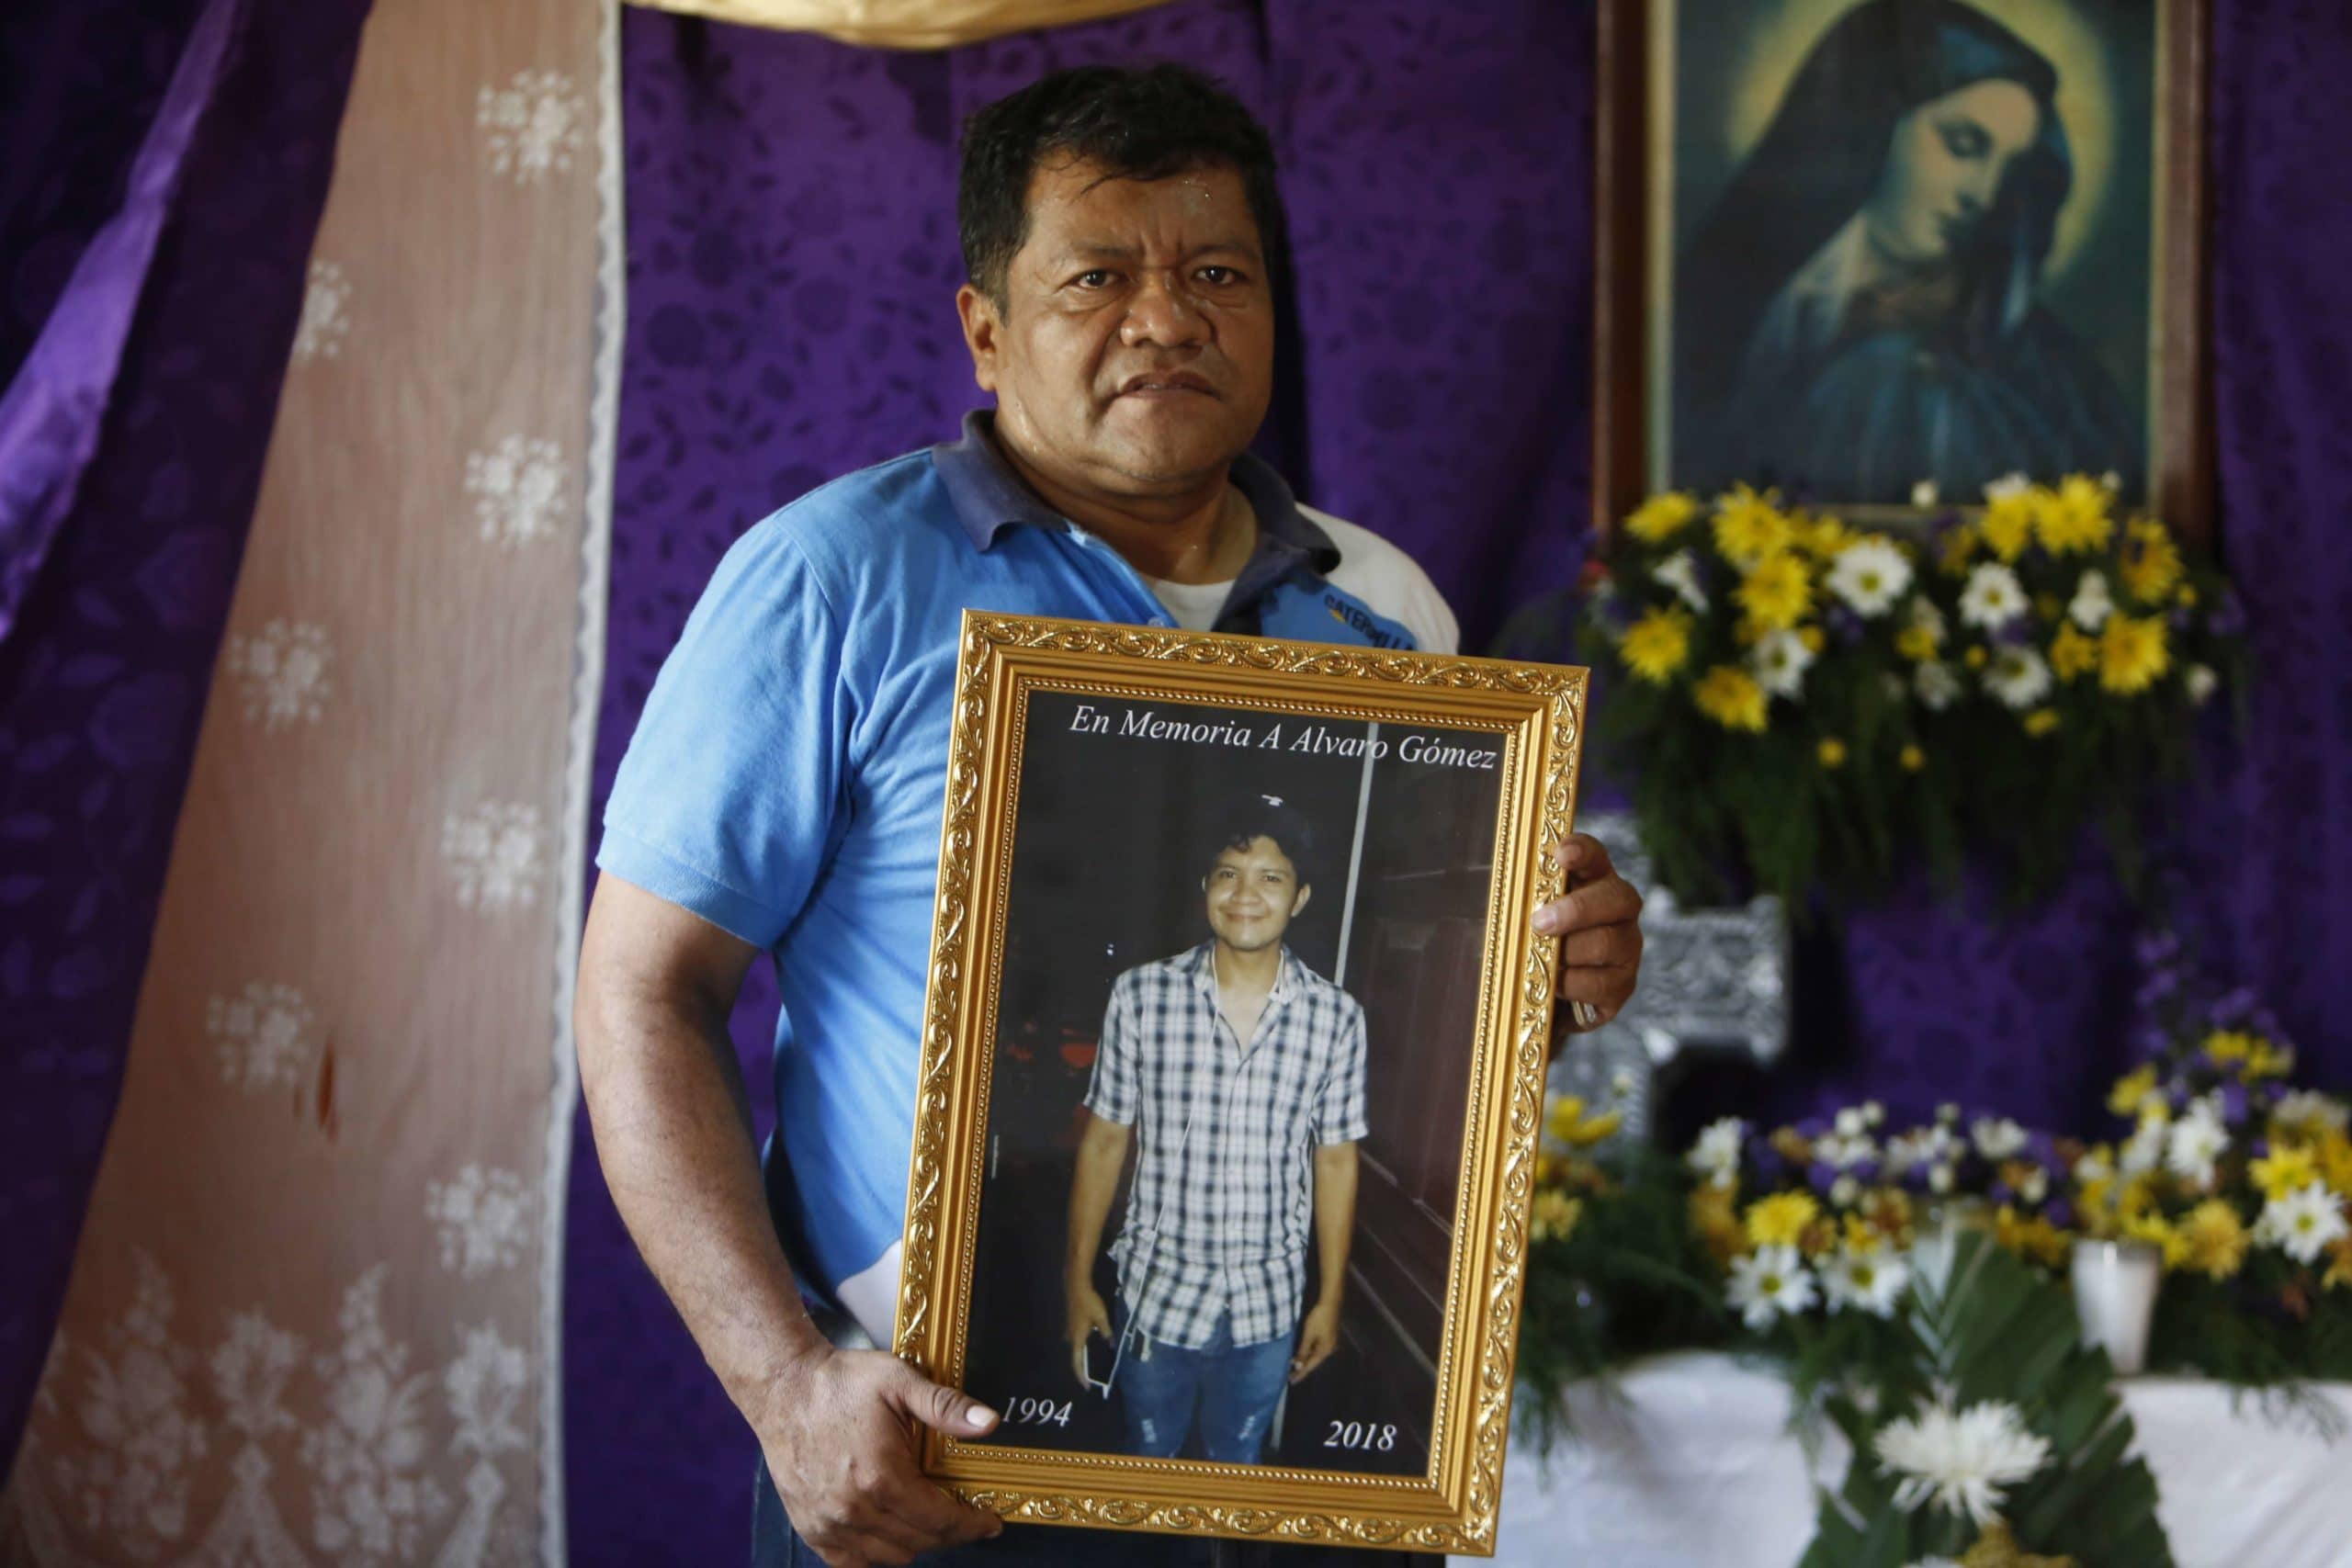 Portrait d'Alvaro Gomez, mort au Nicaragua en 2018, tenu par son père © (AP Photo/Alfredo Zuniga)/XMC301/18134612370869/MAY 2, 2018 PHOTO/1805150504